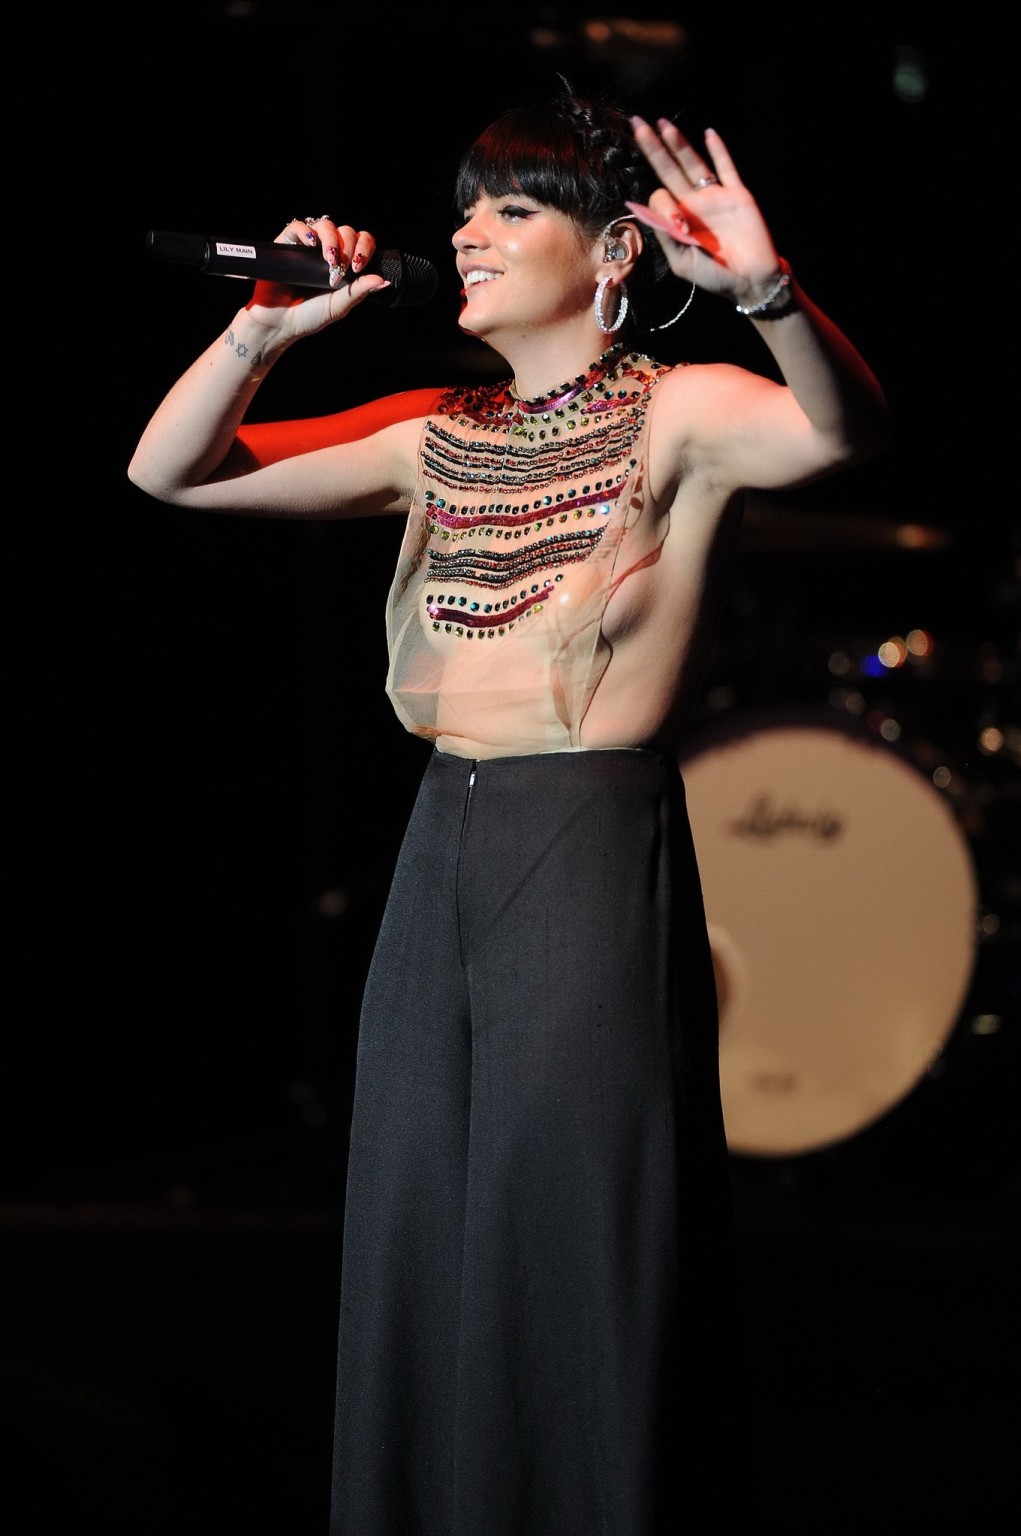 Lily allen seethru mostrando sus tetas en el escenario
 #75200125